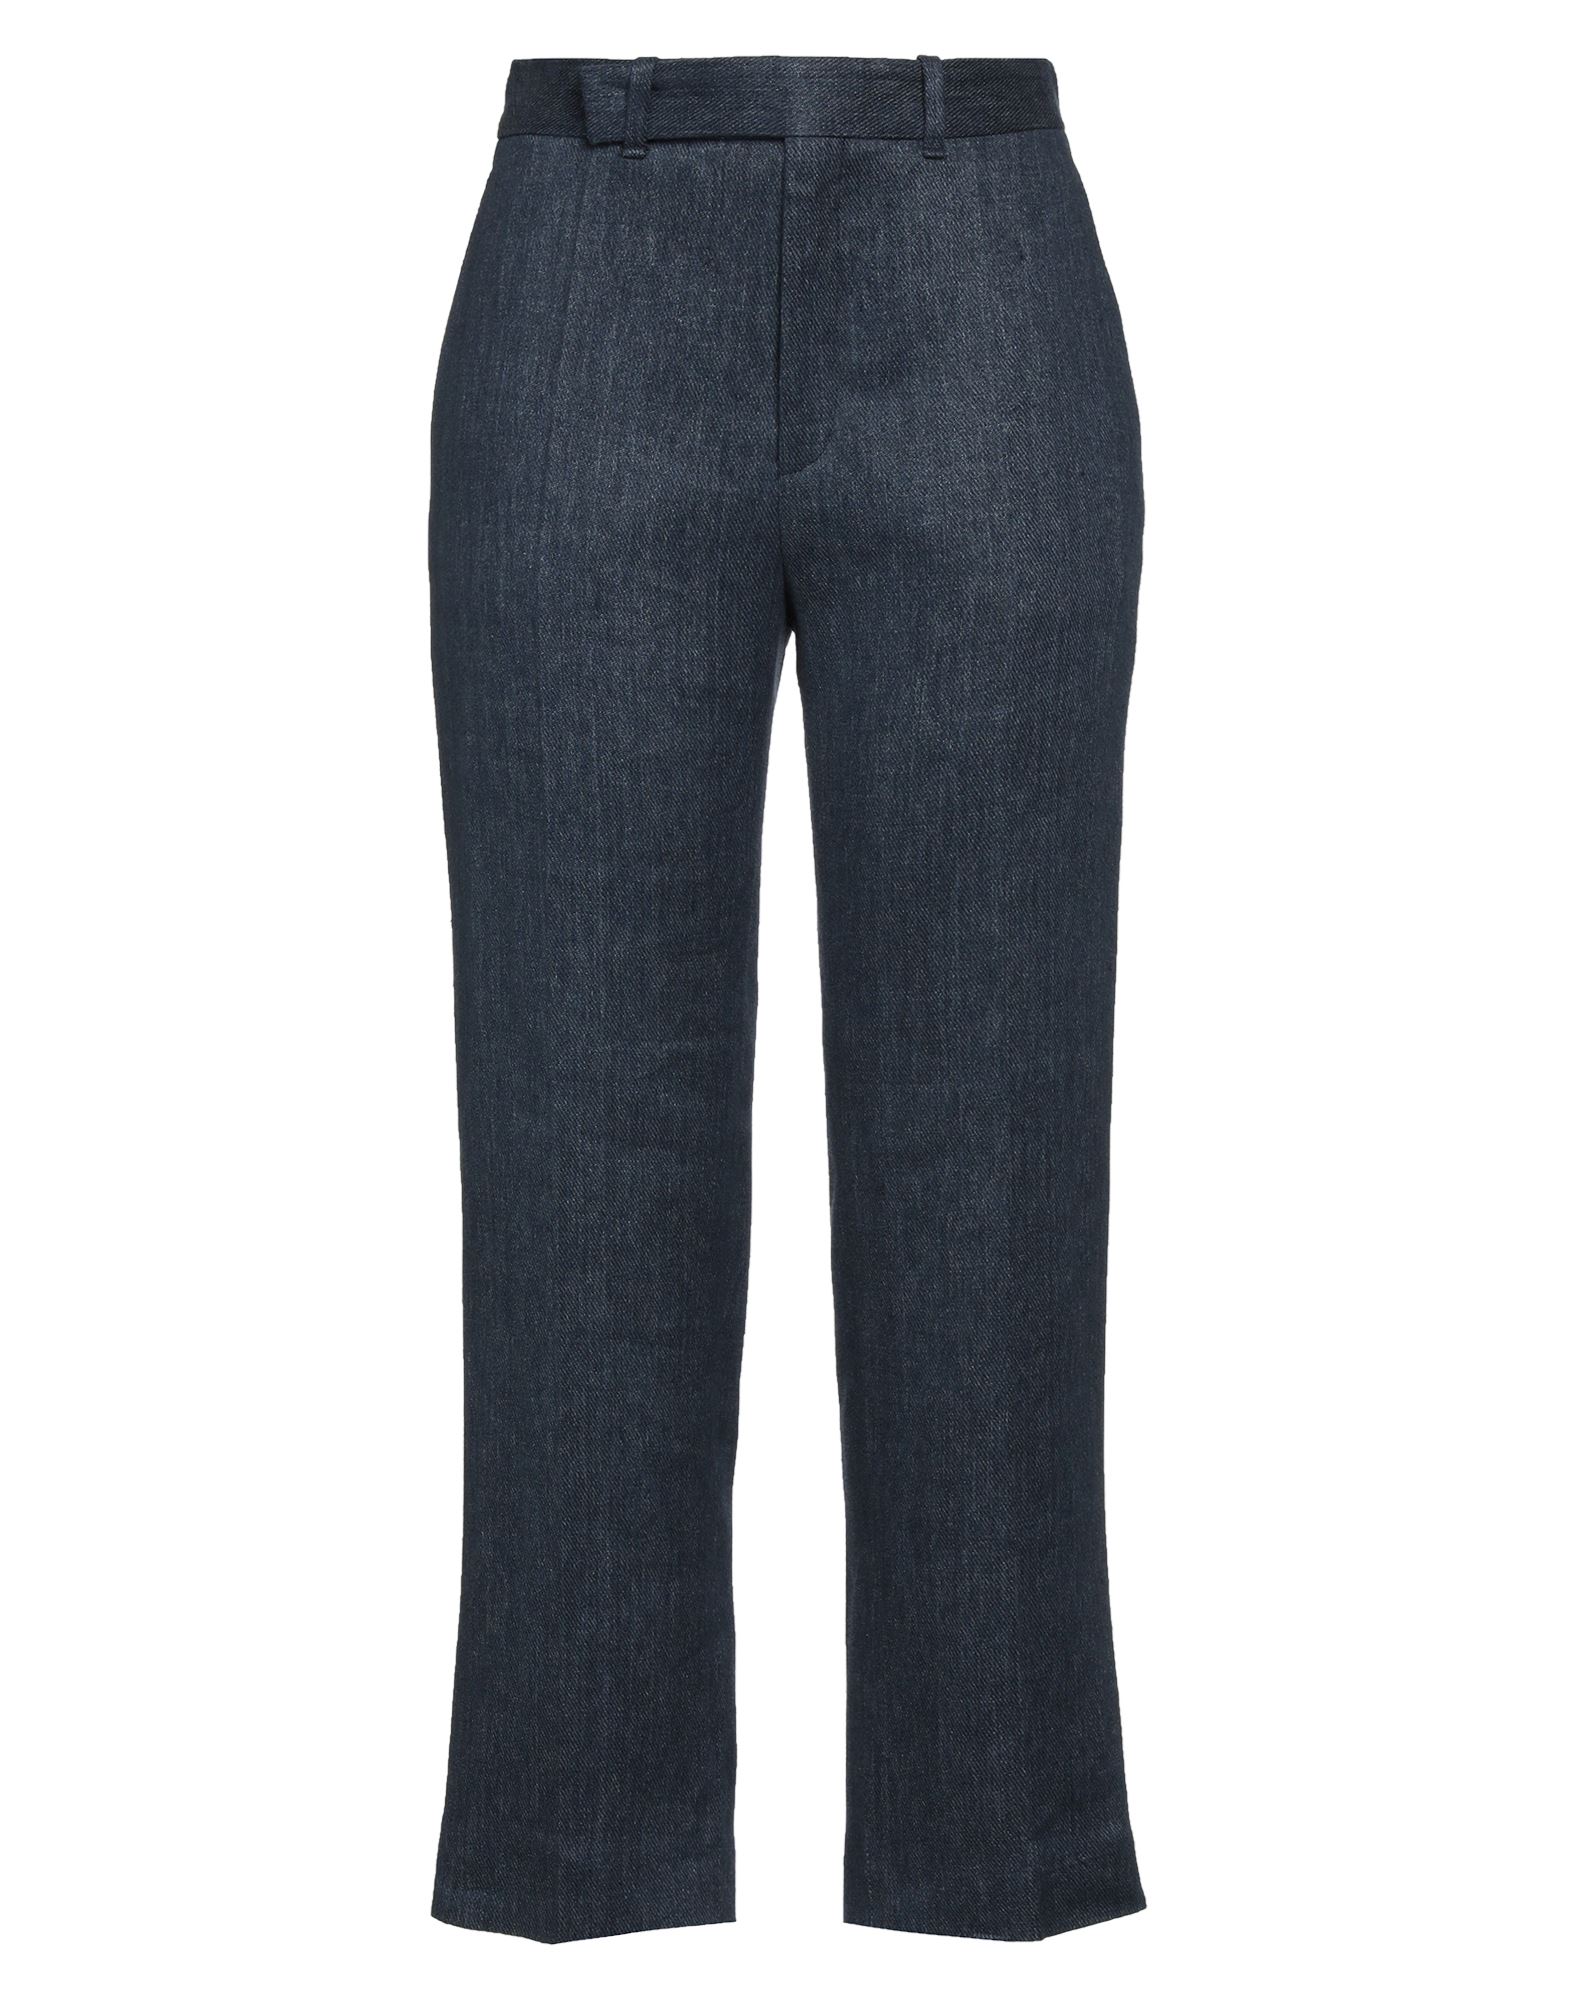 Chloé Women's  Blue Linen Pants